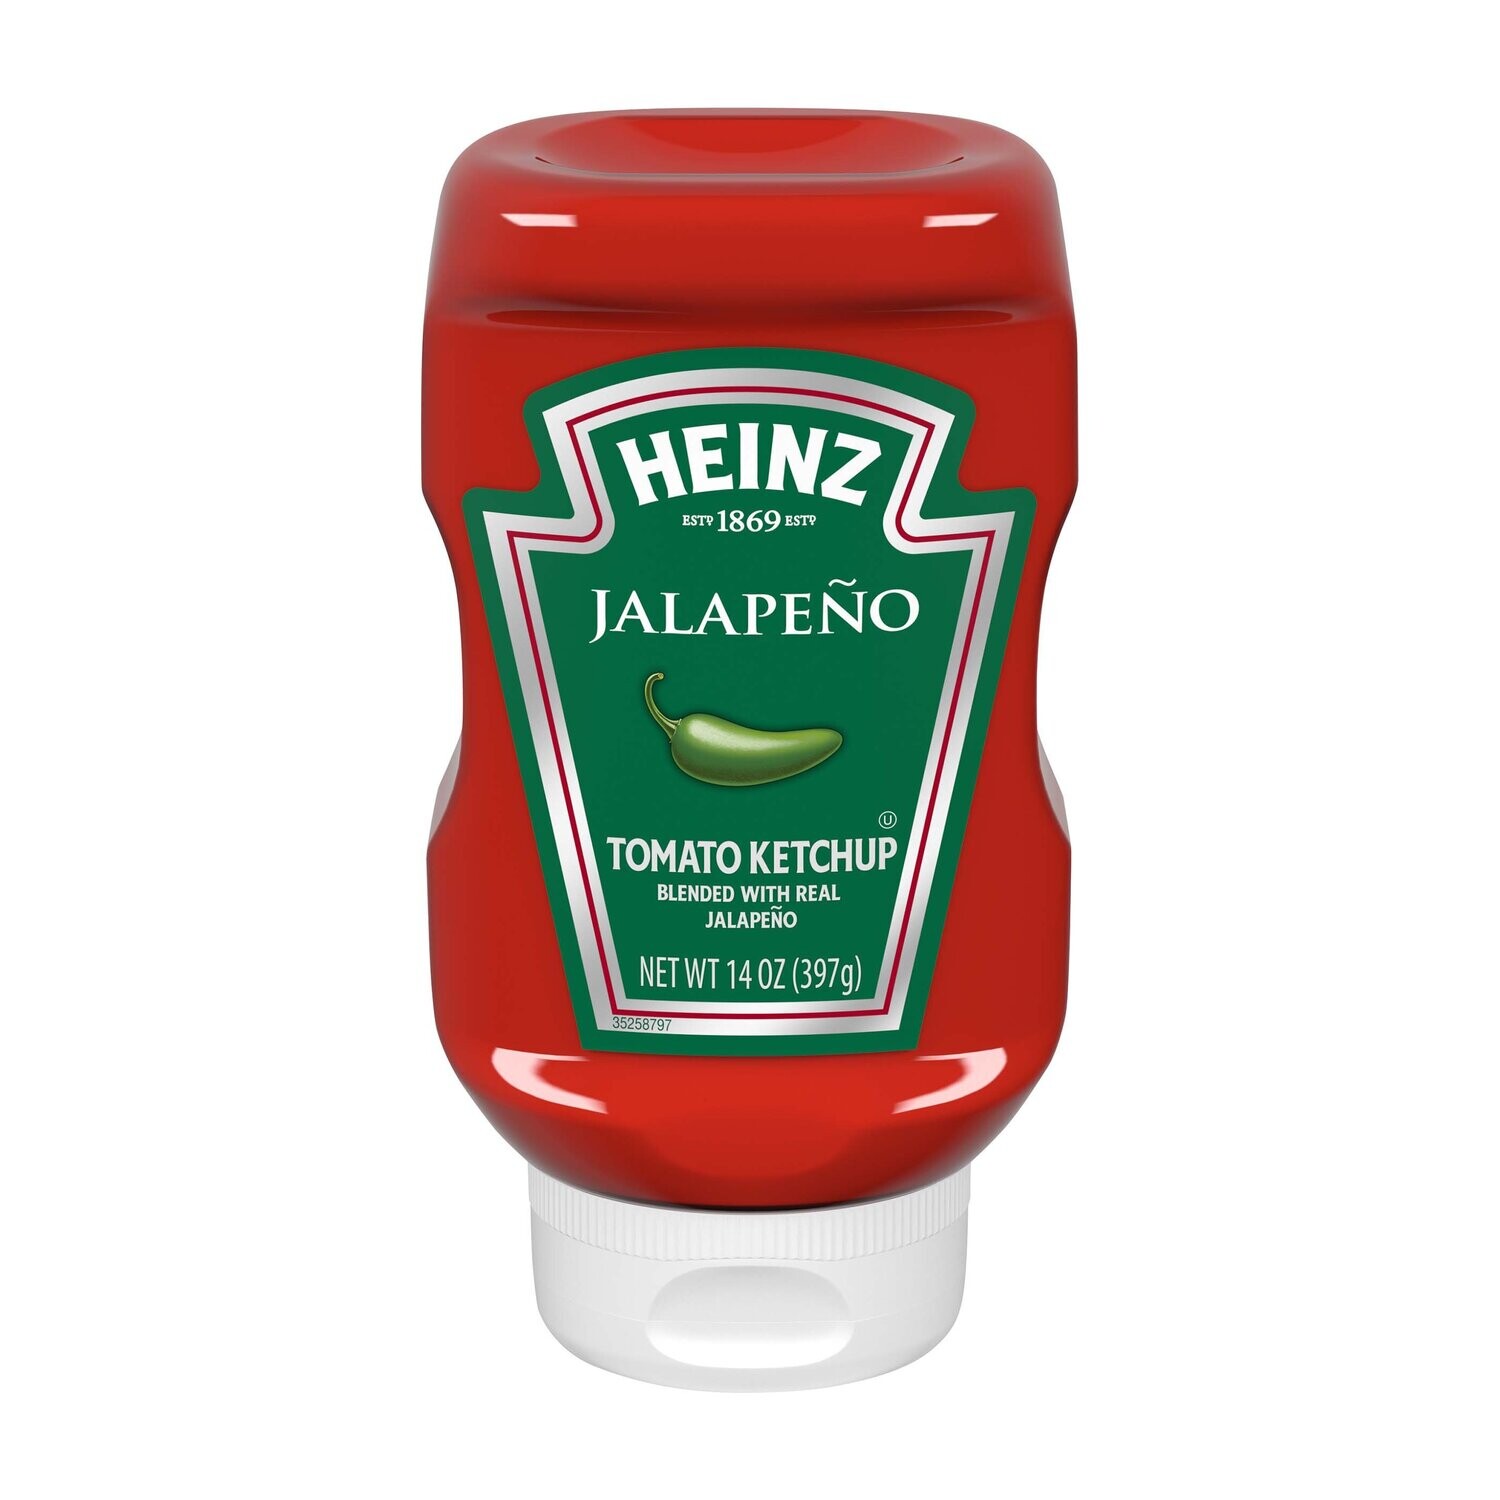 Heinz Jalapeno Ketchup 397g (14oz)